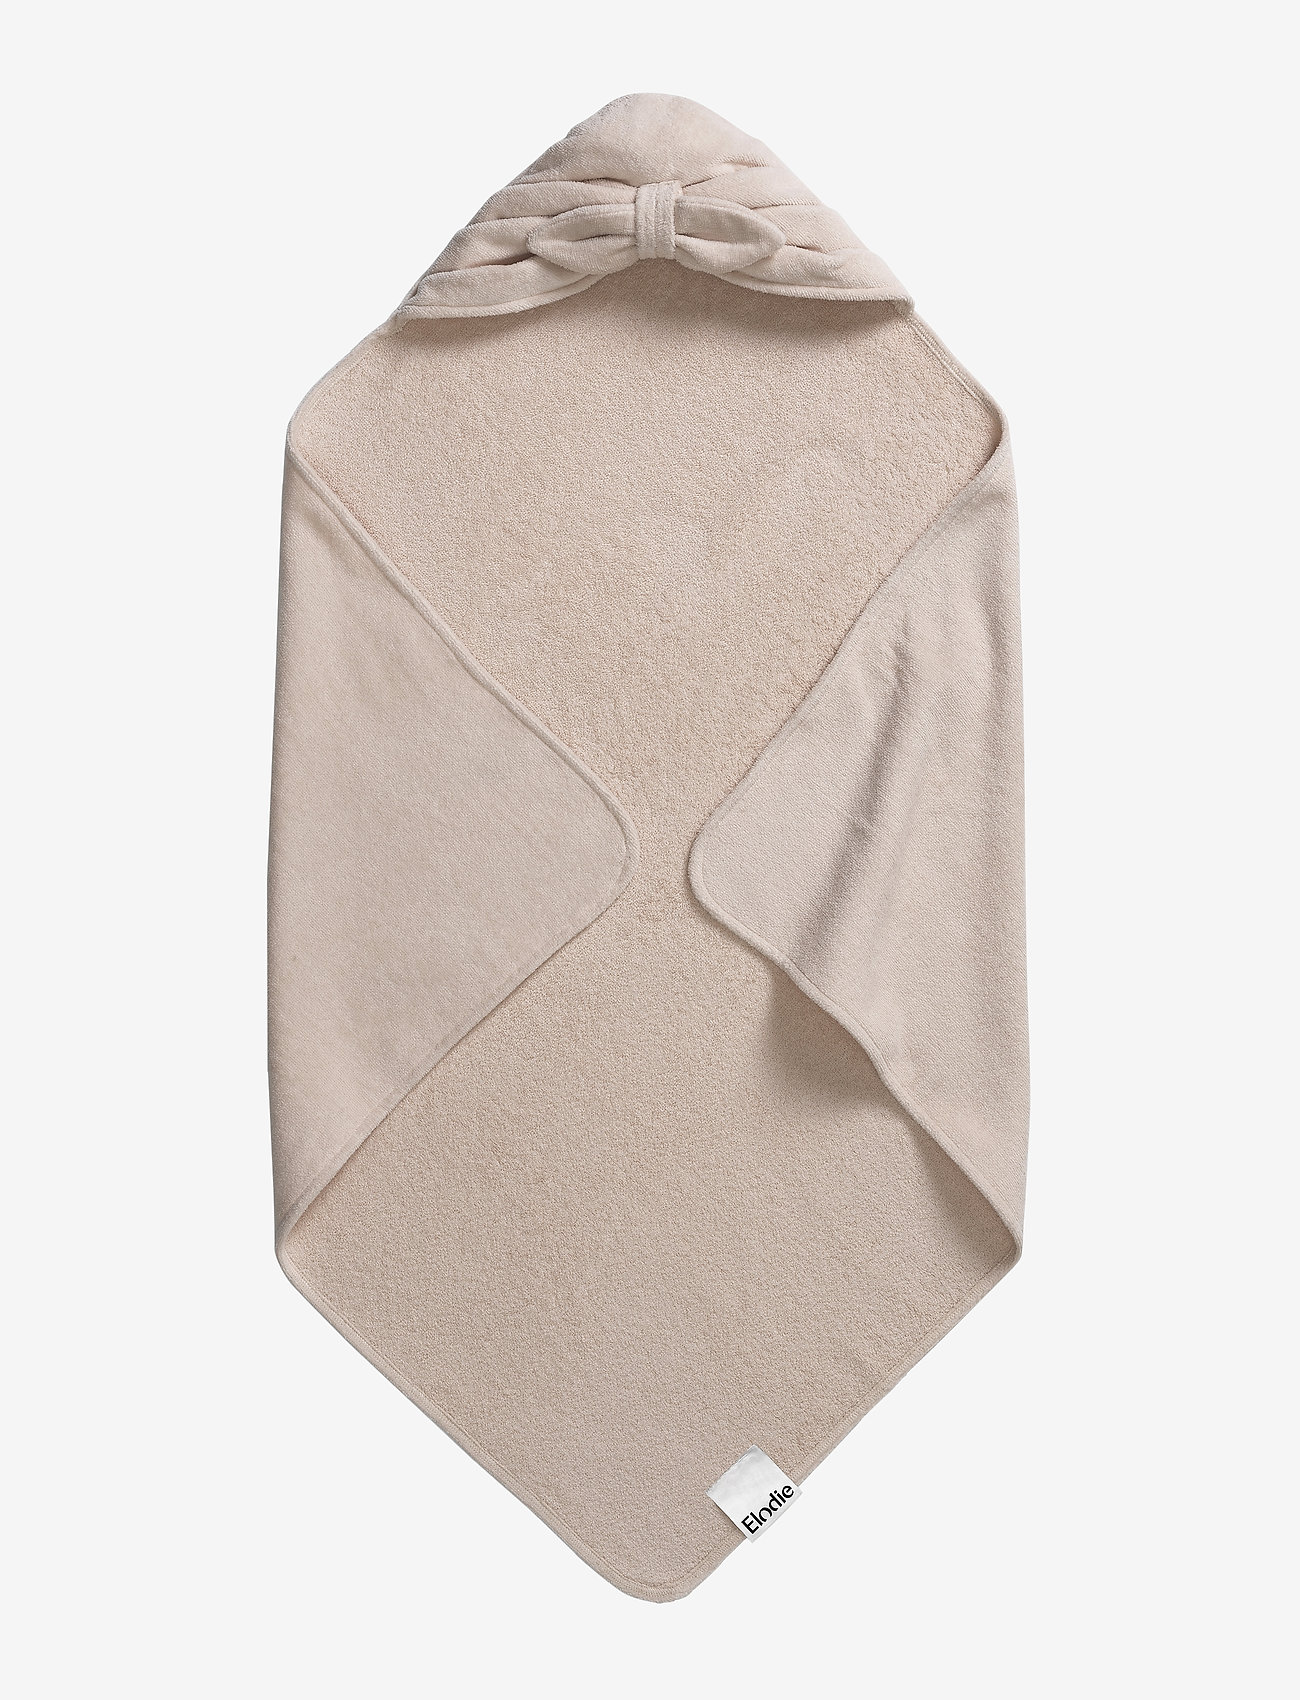 Elodie Details - Hooded Towel - Powder Pink - towels - lt pink - 0